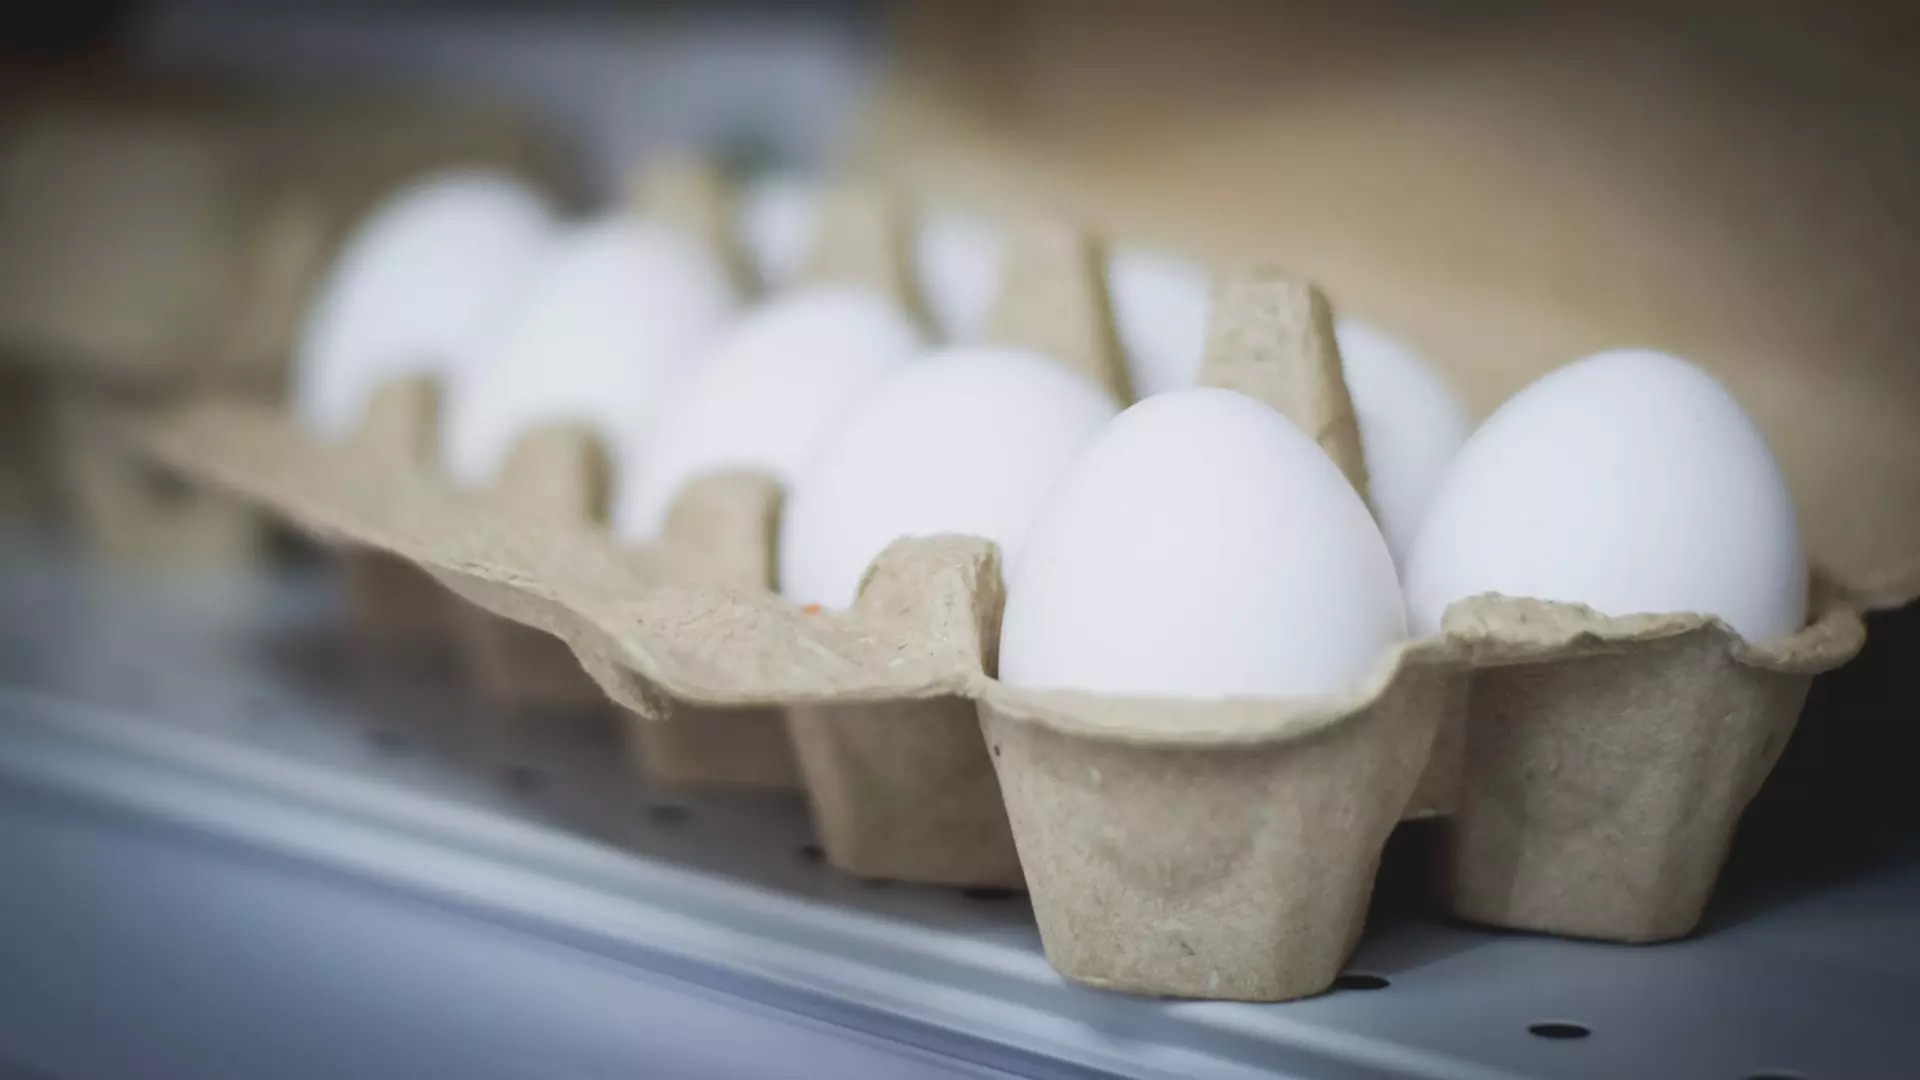 ФАС возбудила дела в отношении производителей яиц из-за роста цен